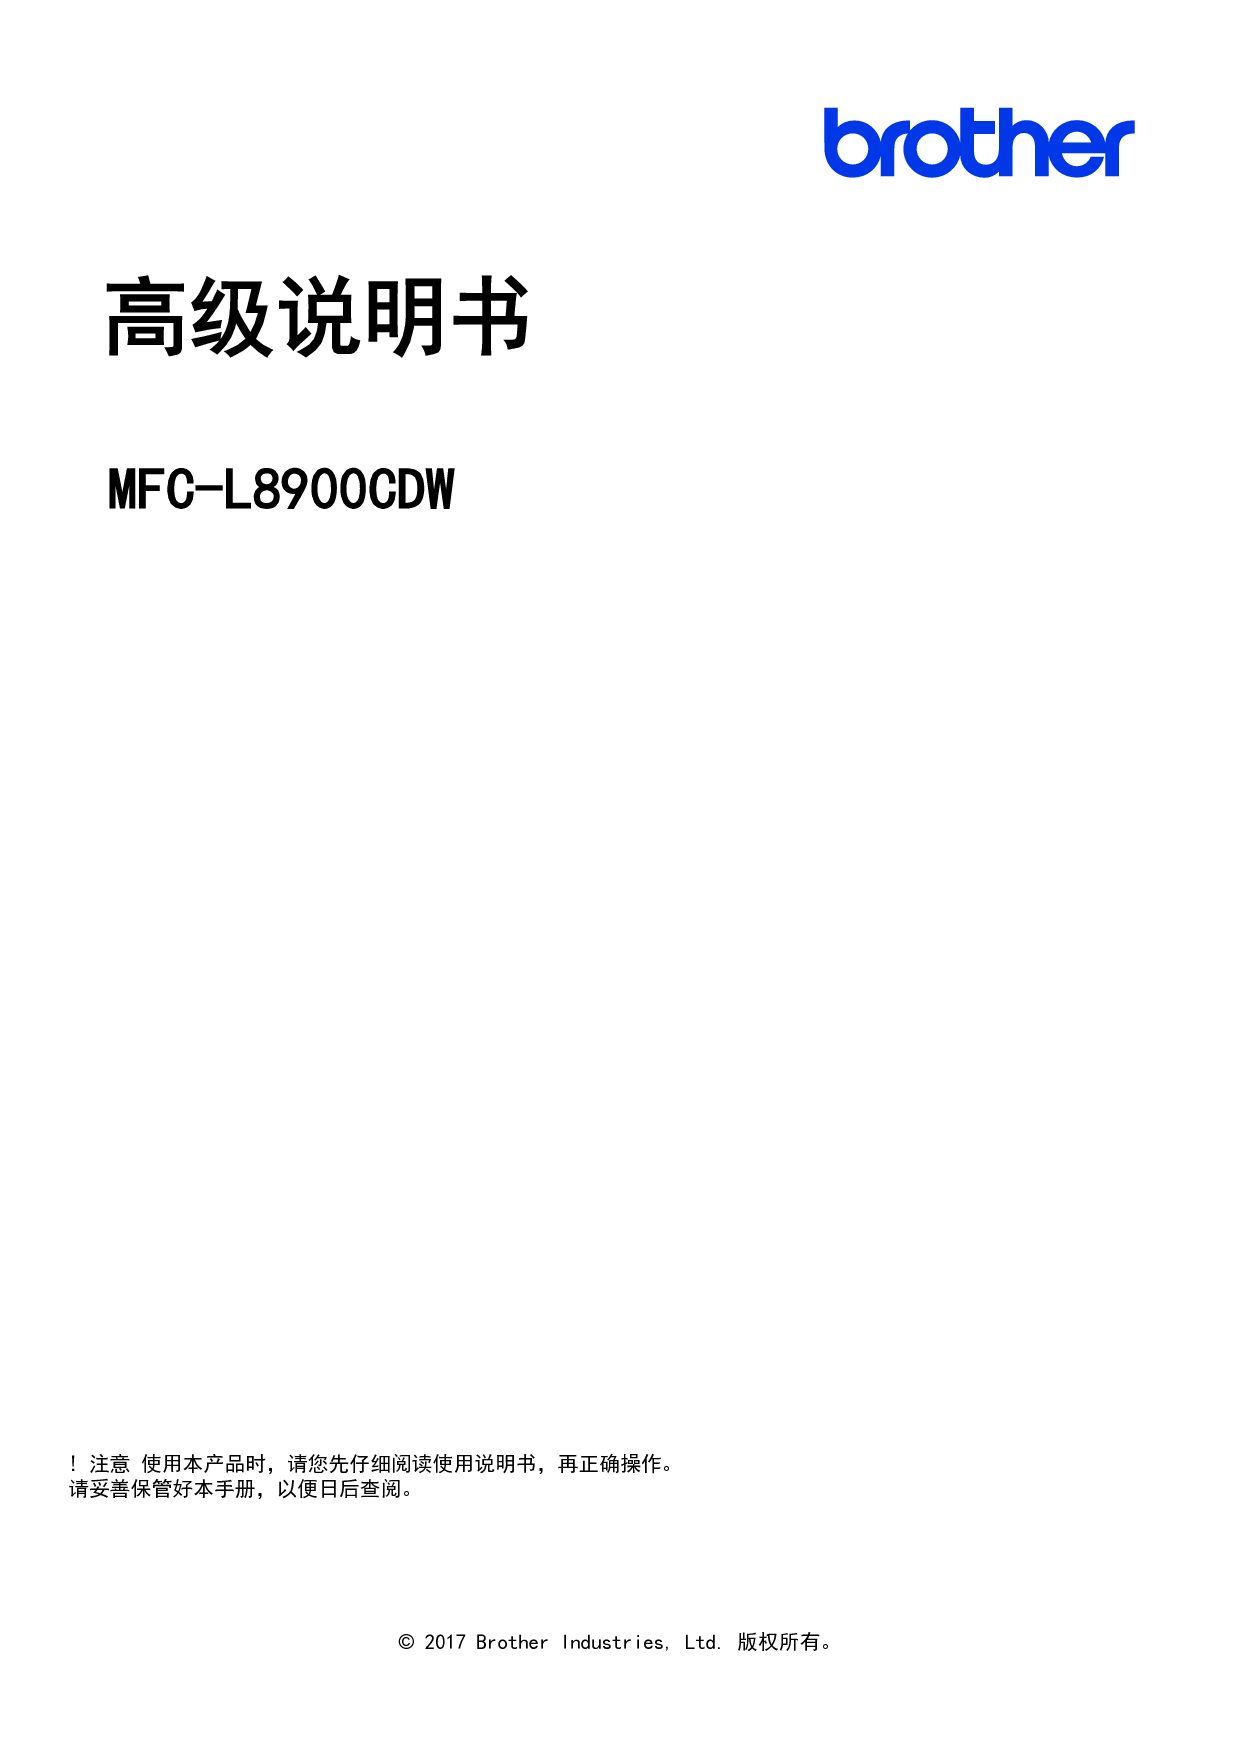 兄弟 Brother MFC-L8900CDW 高级使用说明书 封面